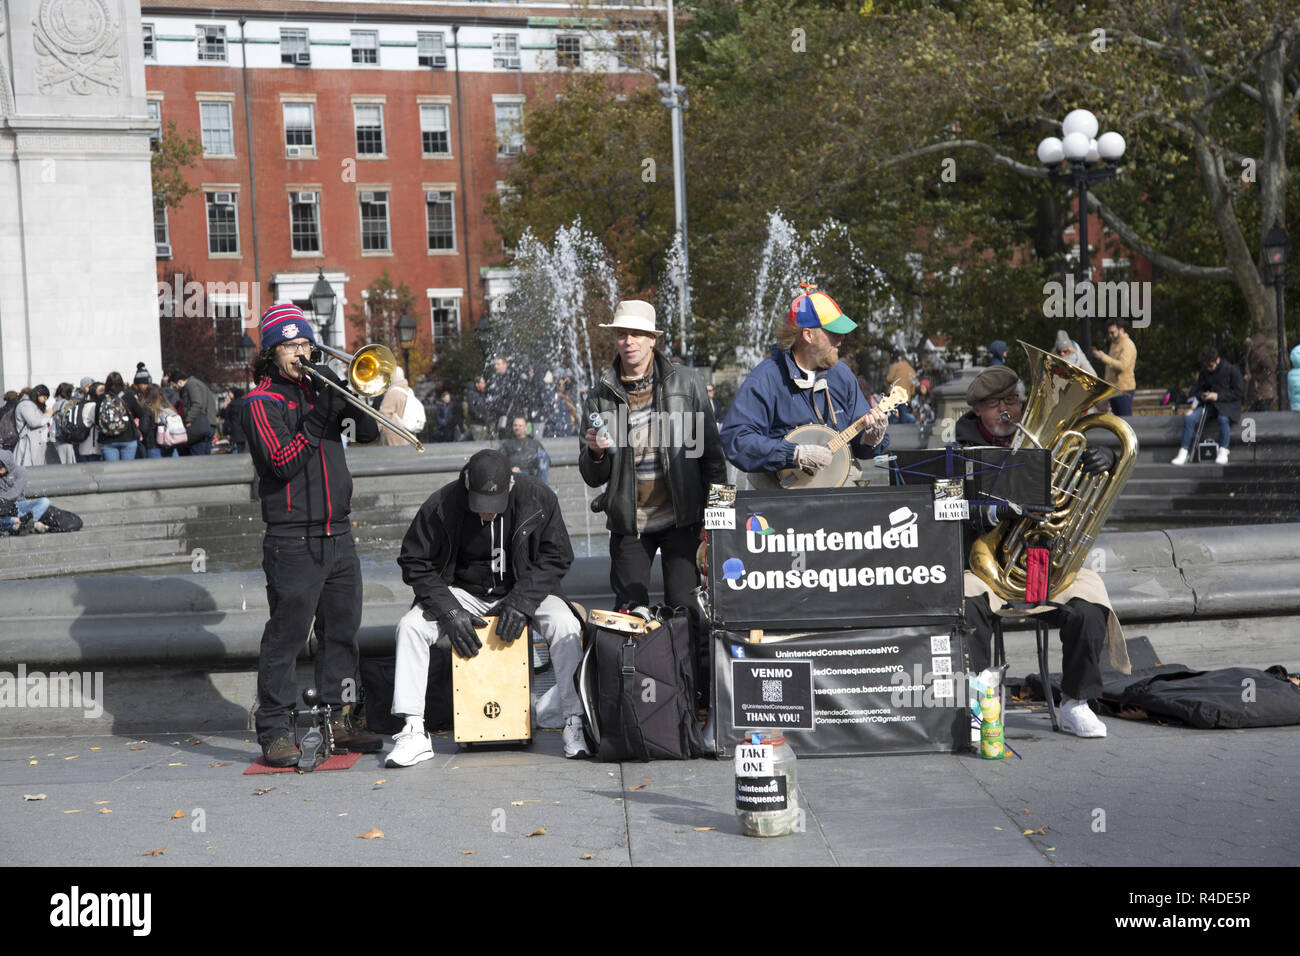 Conseguenze non intenzionali, un pezzo di cinque band professionale facendo qualche lavoro PR giocando a Washington Square Park nel Greenwich Village di New York City in un pomeriggio autunnale. Foto Stock